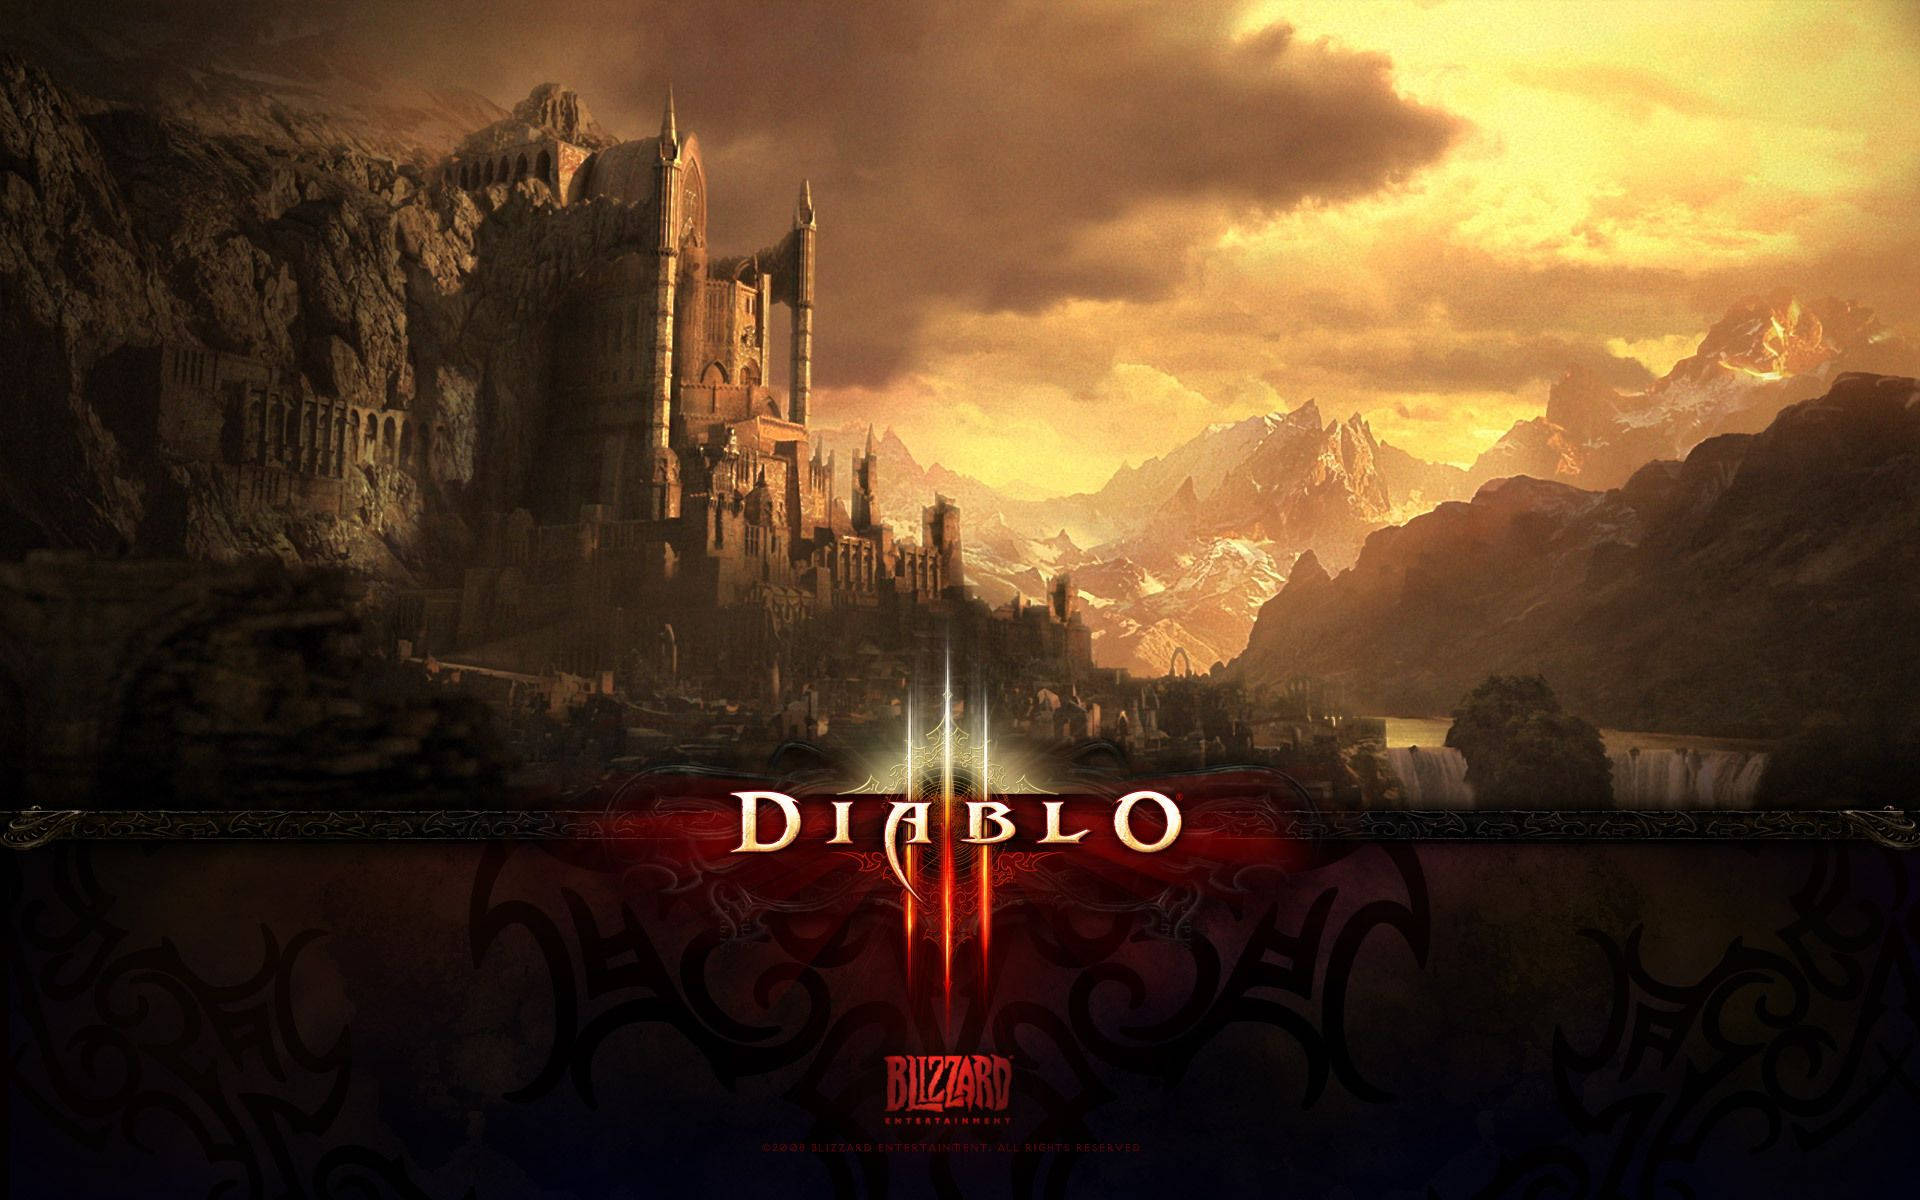 Diablo 3 Scenery Wallpaper